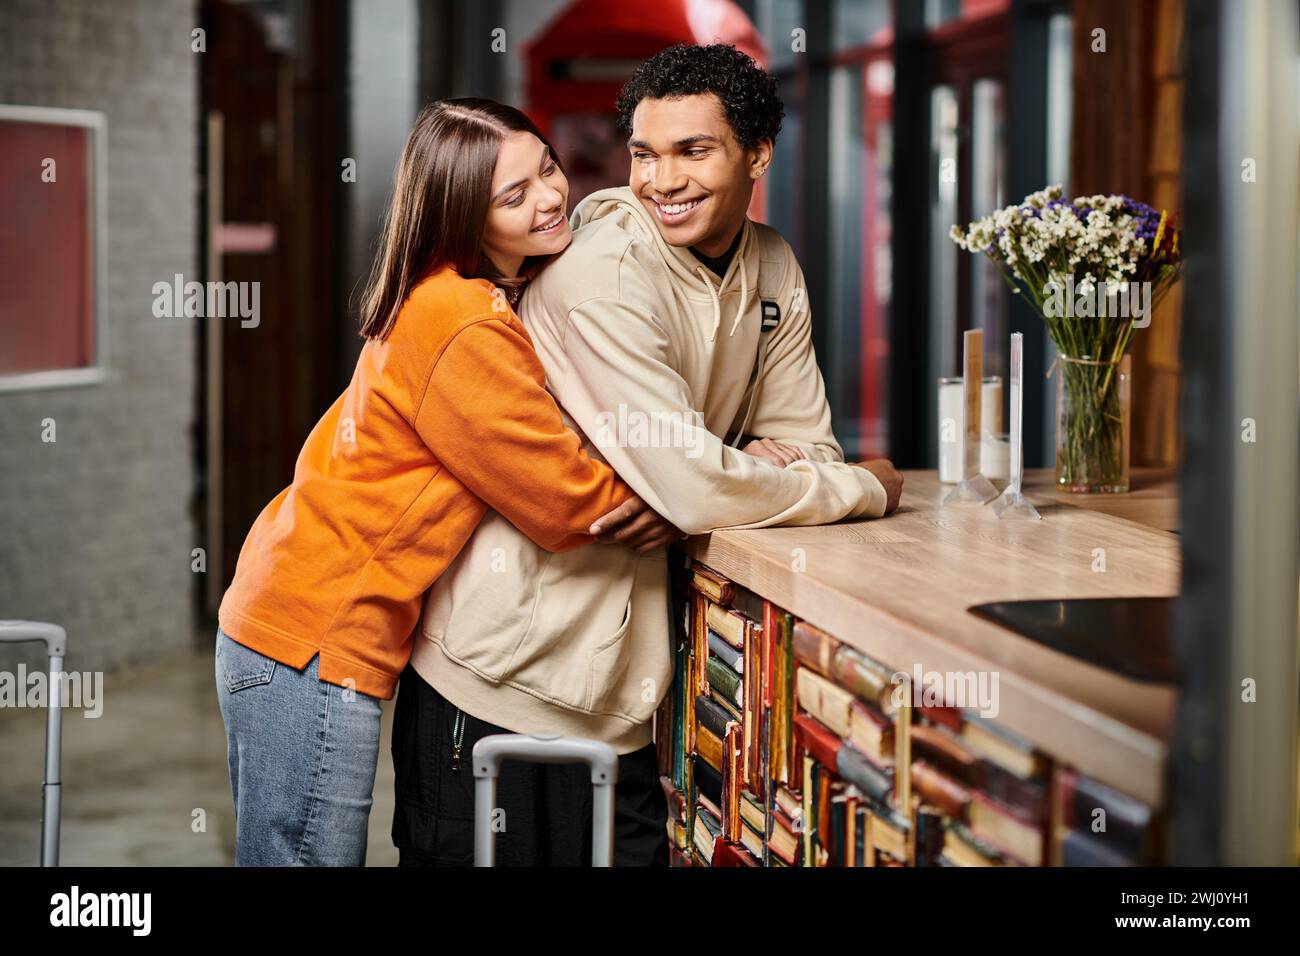 Ein romantischer Moment, der zwischen Mann und Frau geteilt wird, während sie sich an der Rezeption im Hostel umarmen Stockfoto